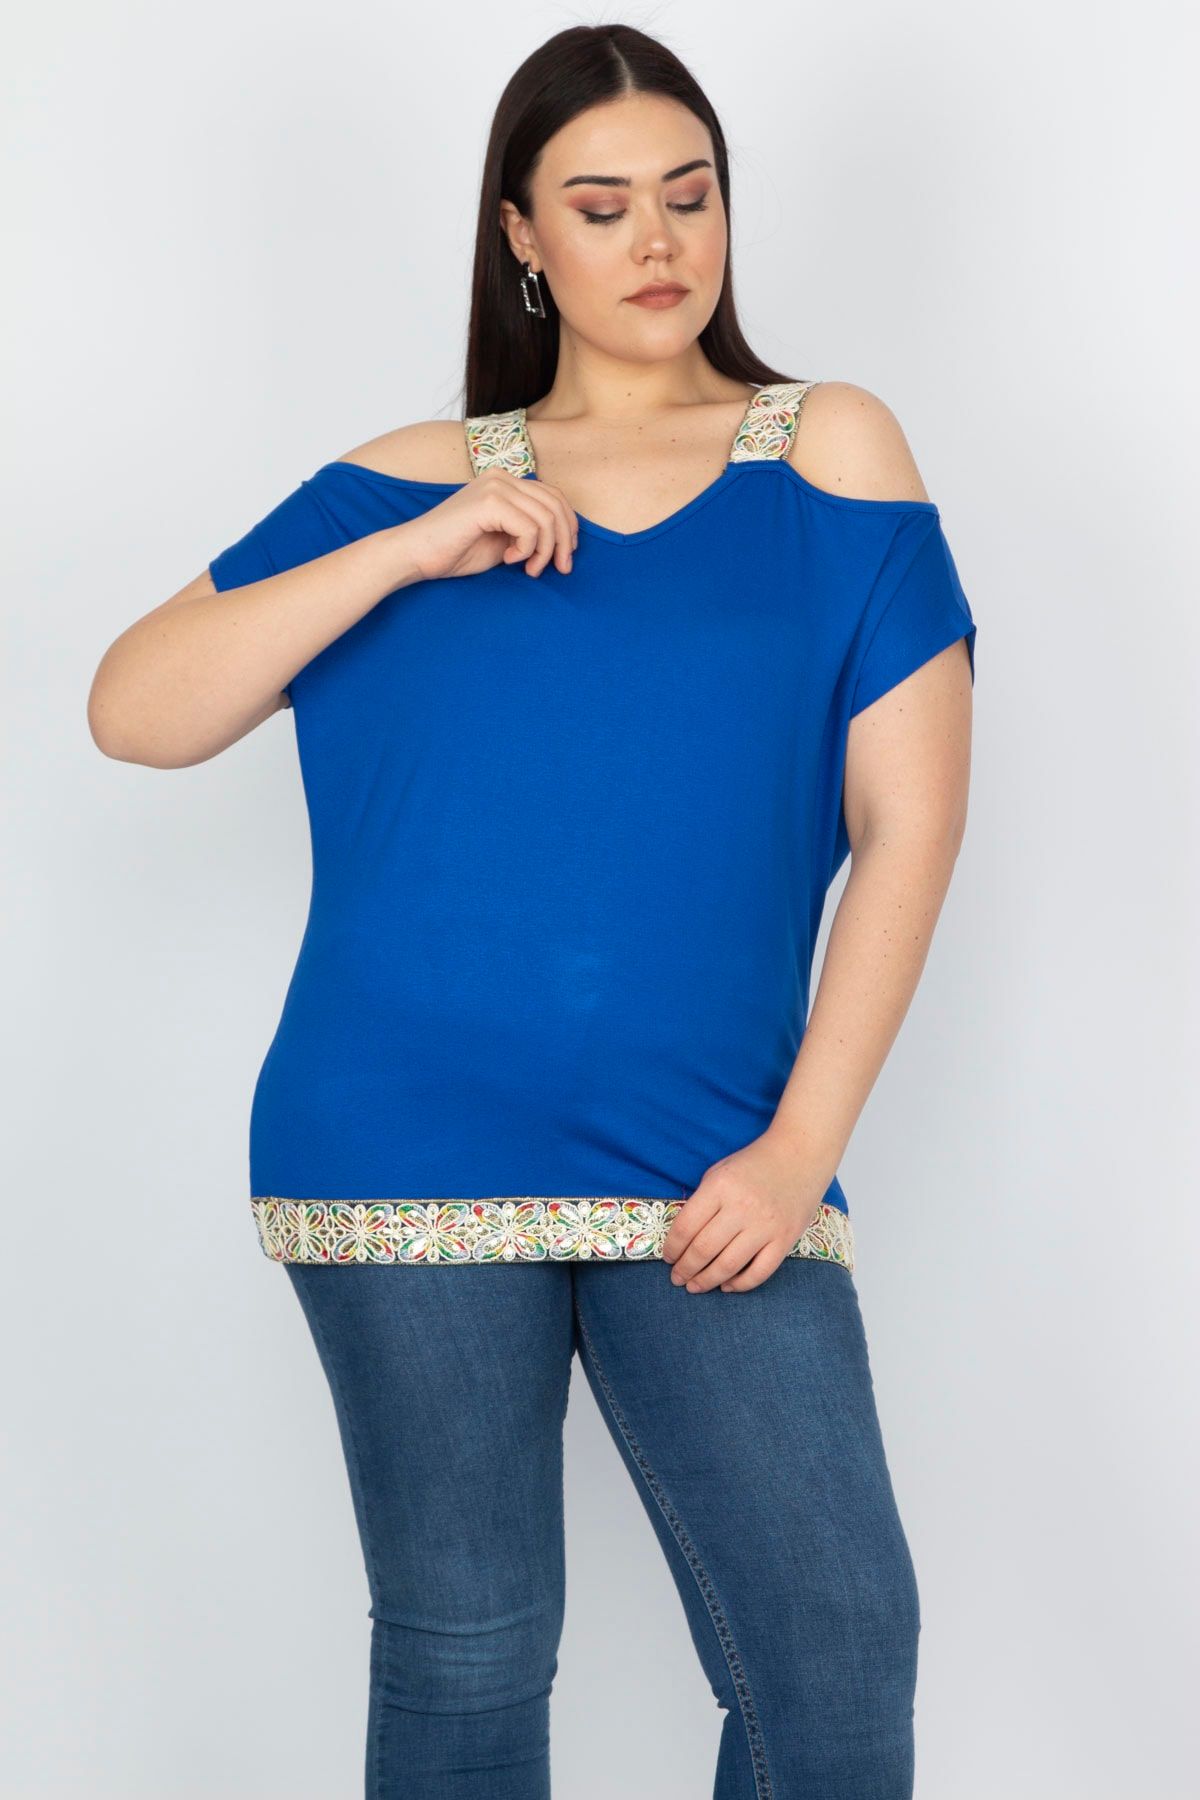 Şans Tekstil Kadın Saks Omuz Dekolteli Askı Ve Etek Ucu Payet Dantel Detaylı Bluz 85n5631